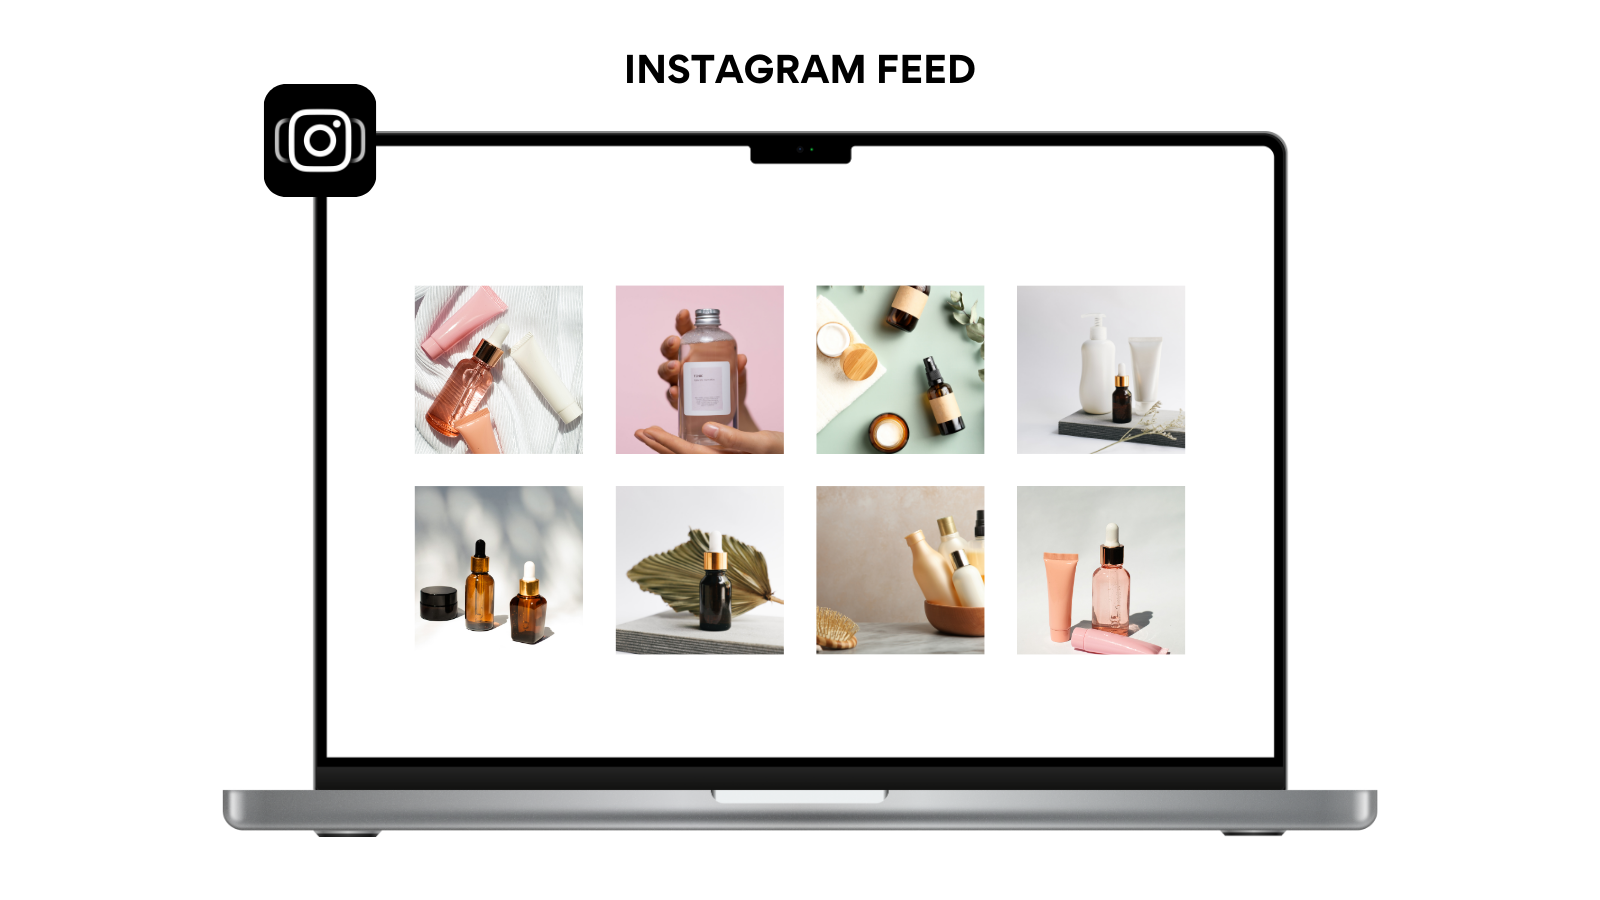 Instafeed - Instagram Feed, Instagram Stories, Instagram Reels